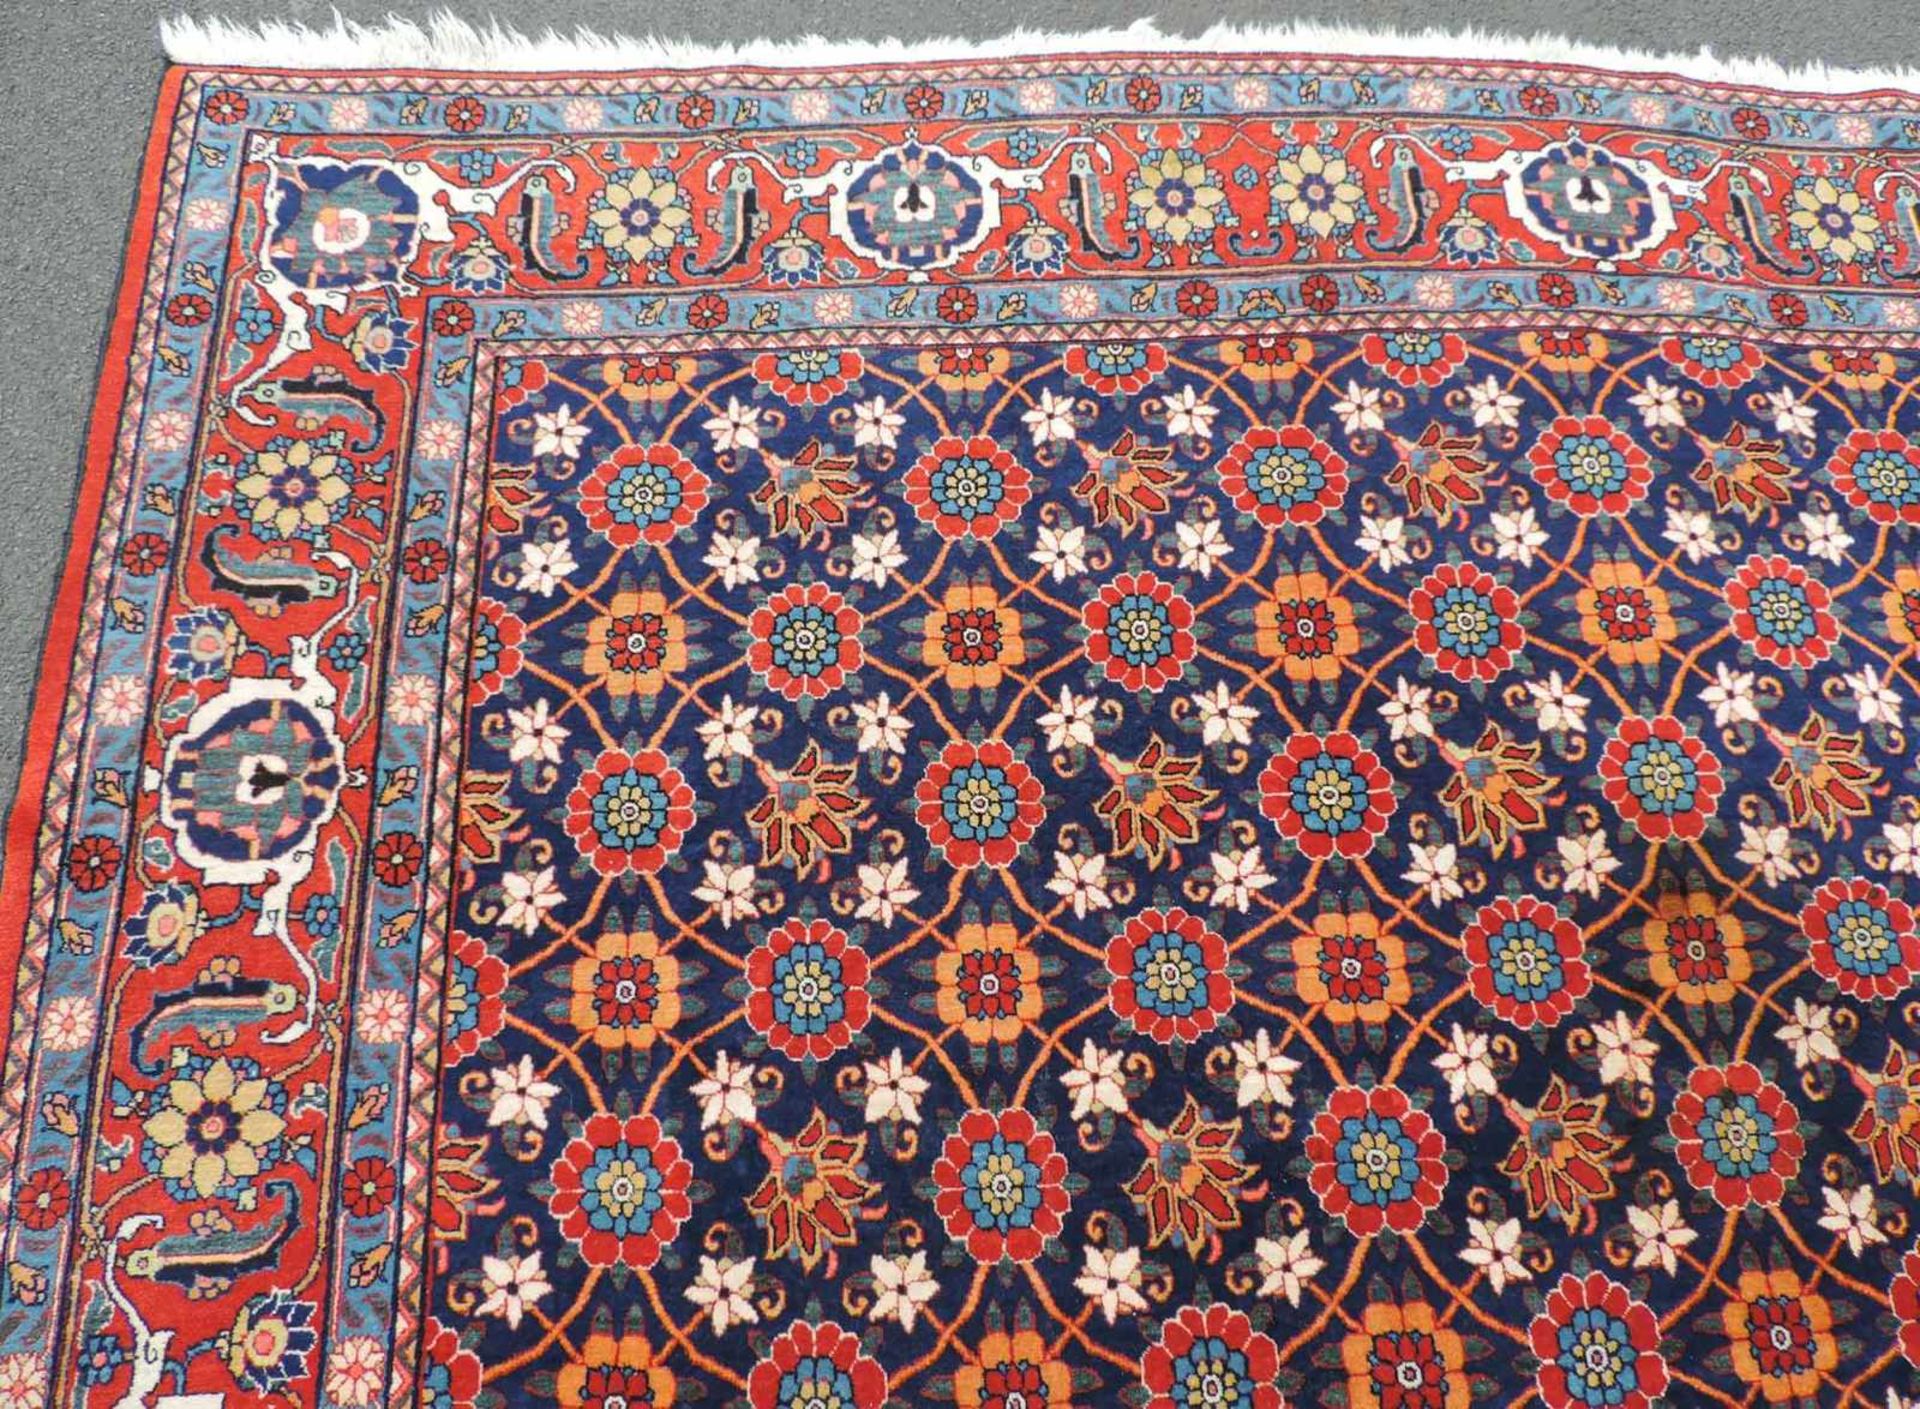 Weramin Manfakturteppich. Iran, alt, um 1940. 308 cm x 210 cm. Handgeknüpft. Wolle auf Baumwolle. - Bild 6 aus 7